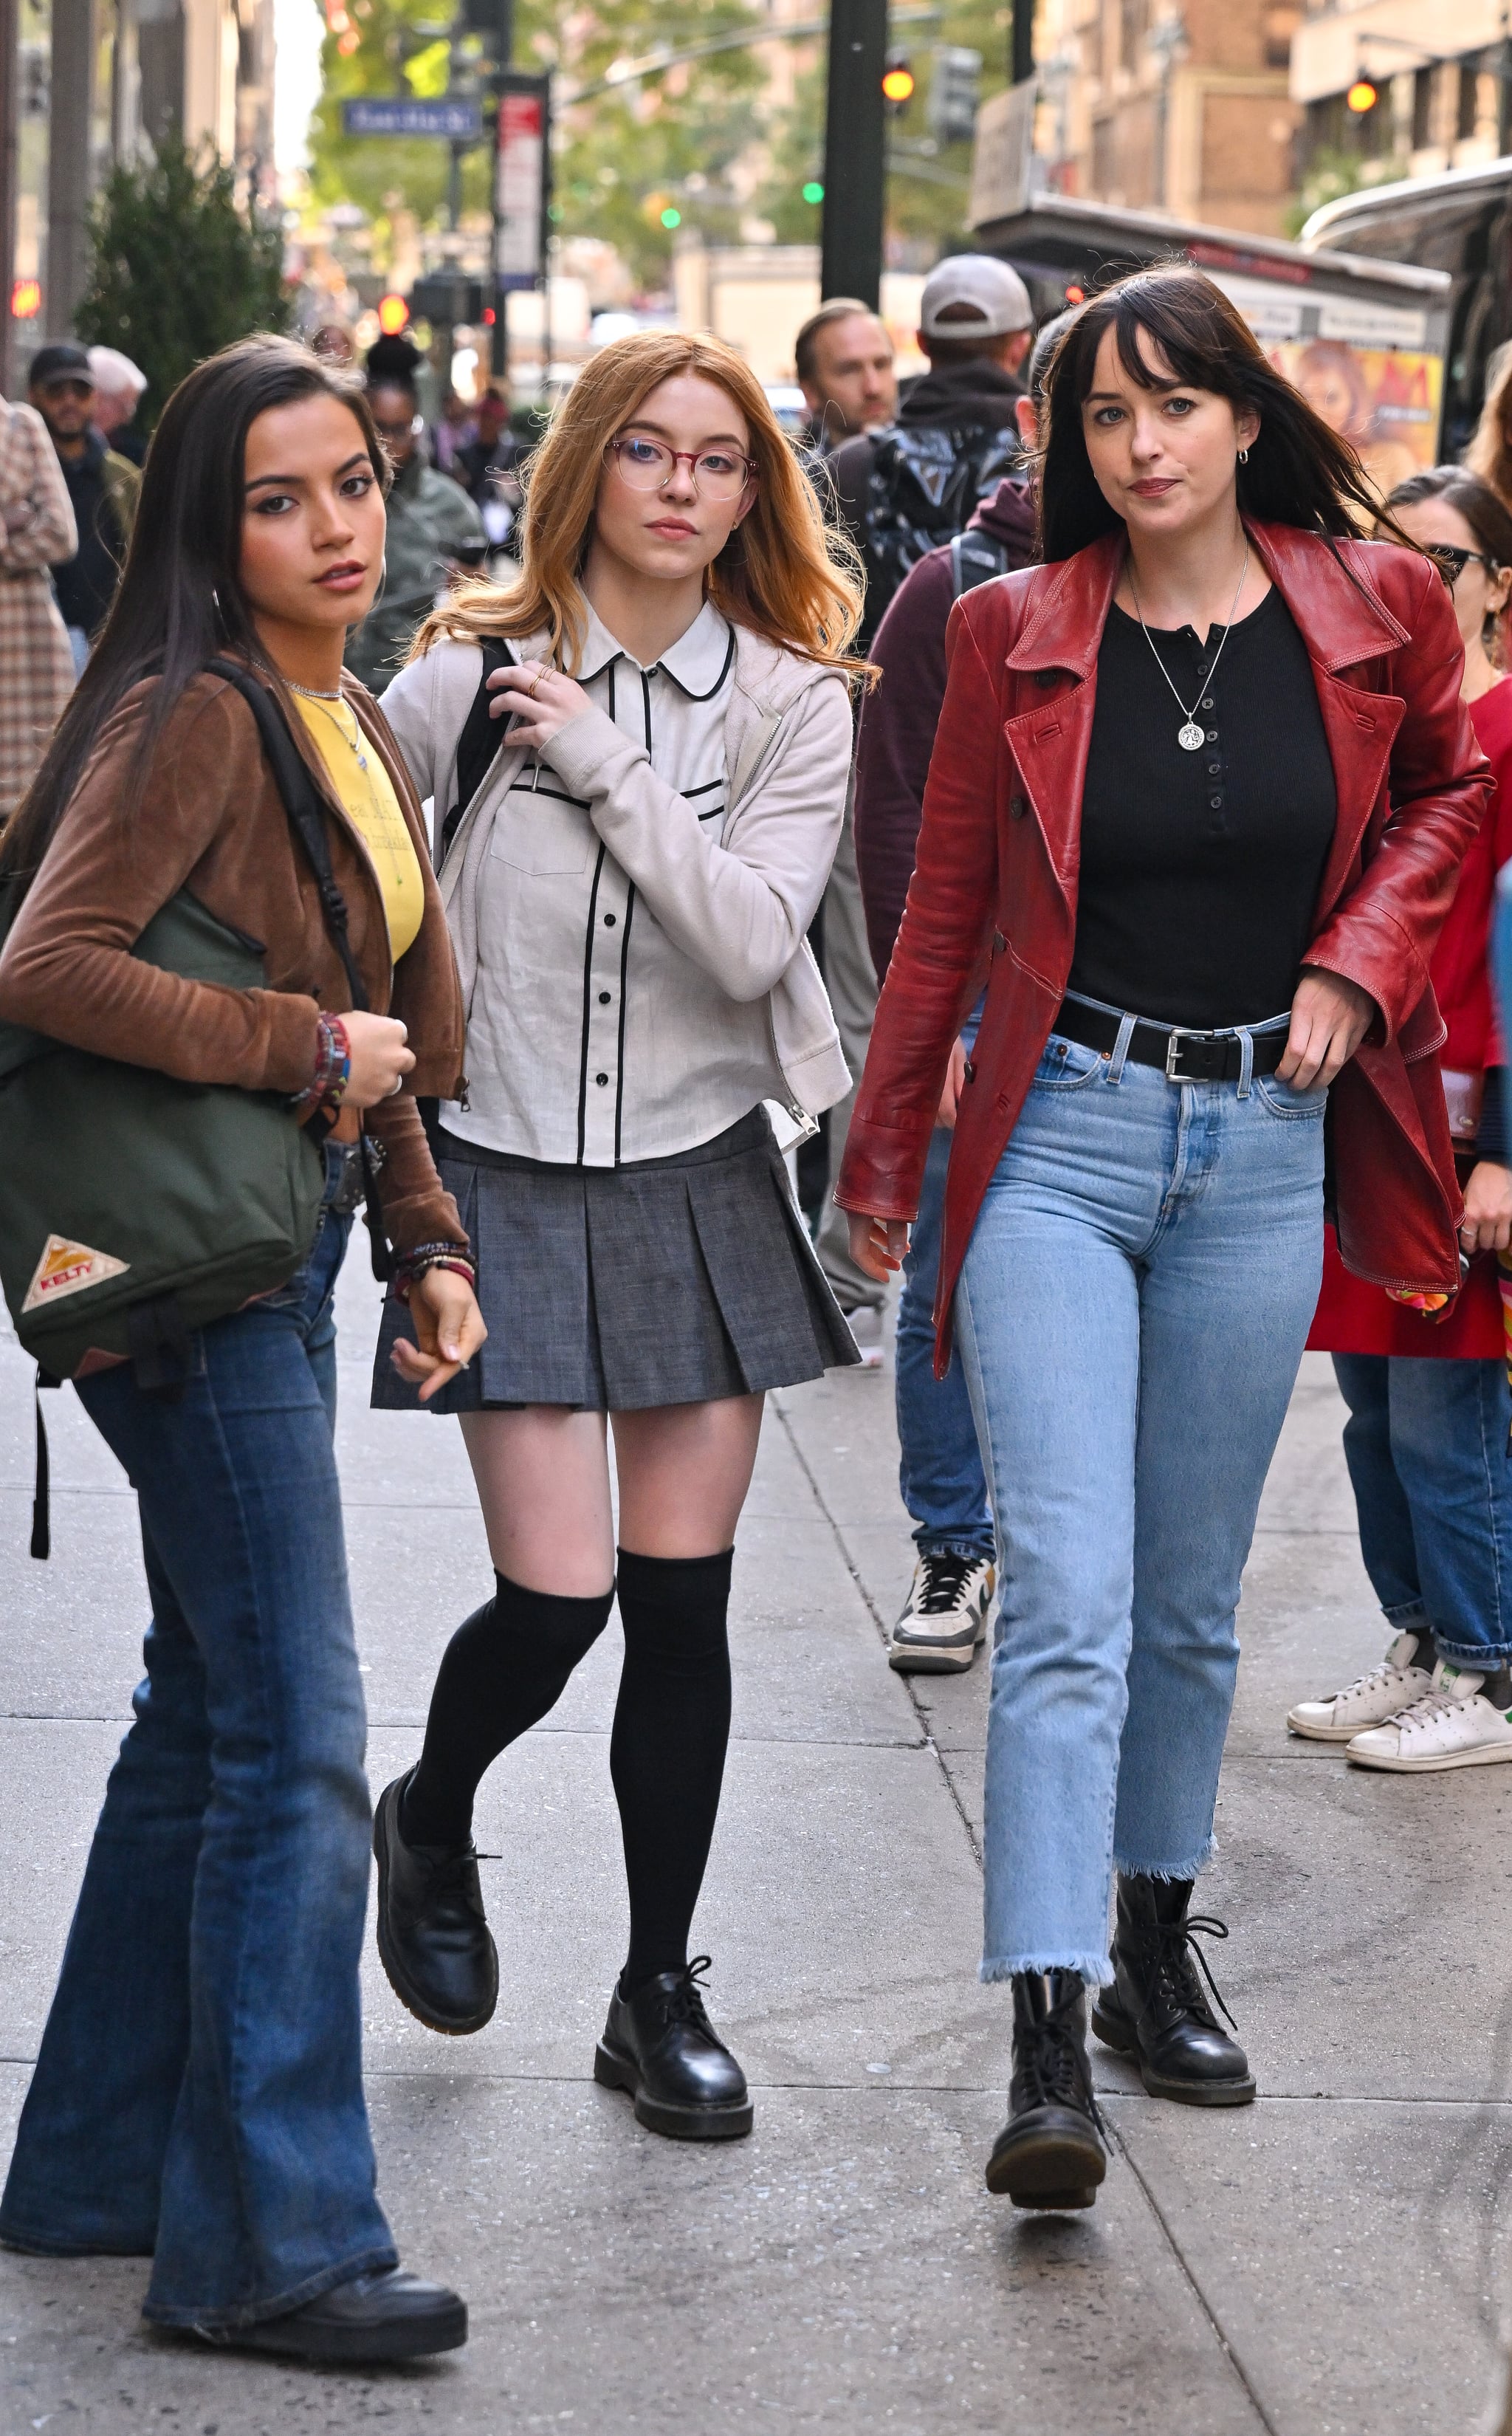  Isabela Merced, Sydney Sweeney and Dakota Johnson are seen on the set of 